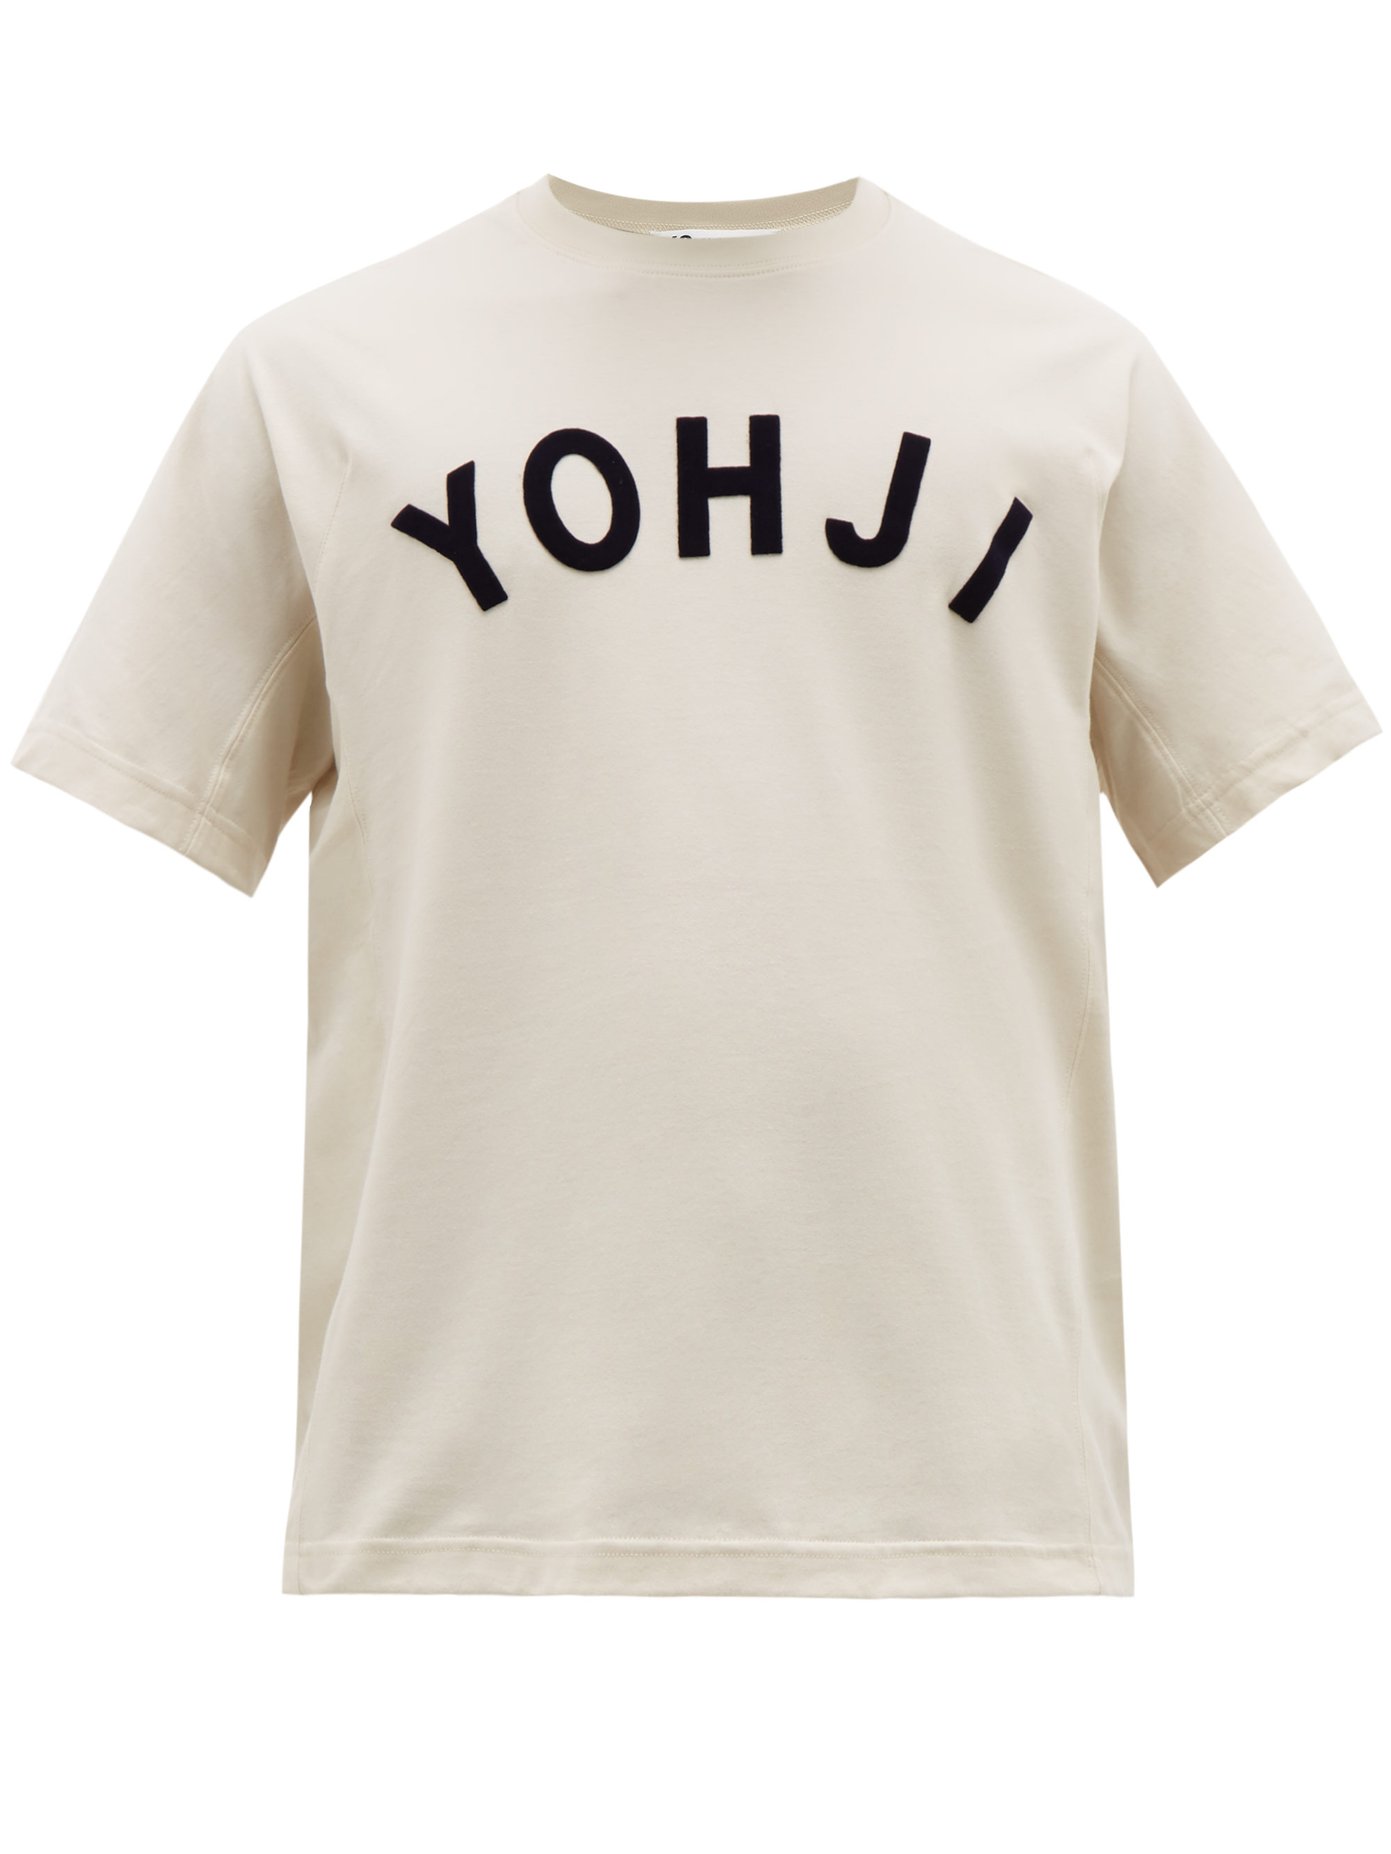 yohji t shirt